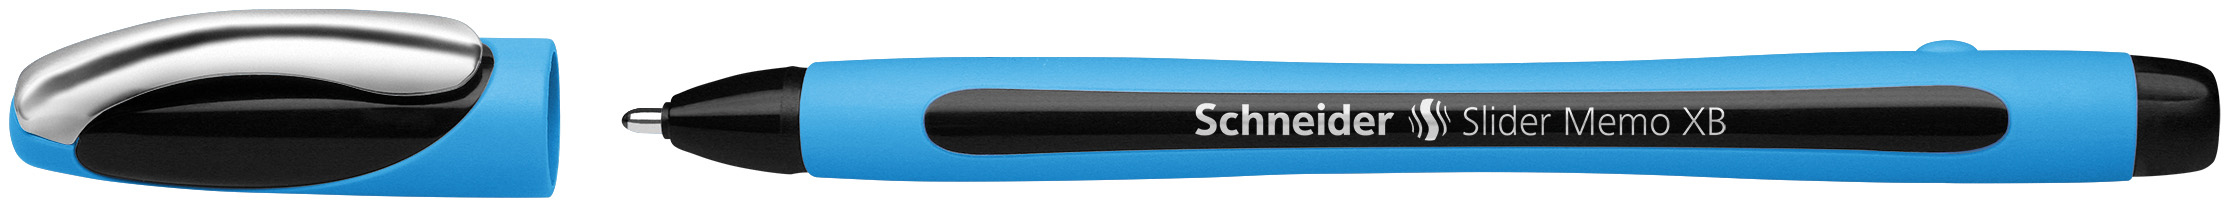 SCHNEIDER Kugelschreiber Slider Memo XB 0.7mm schwarz<br>